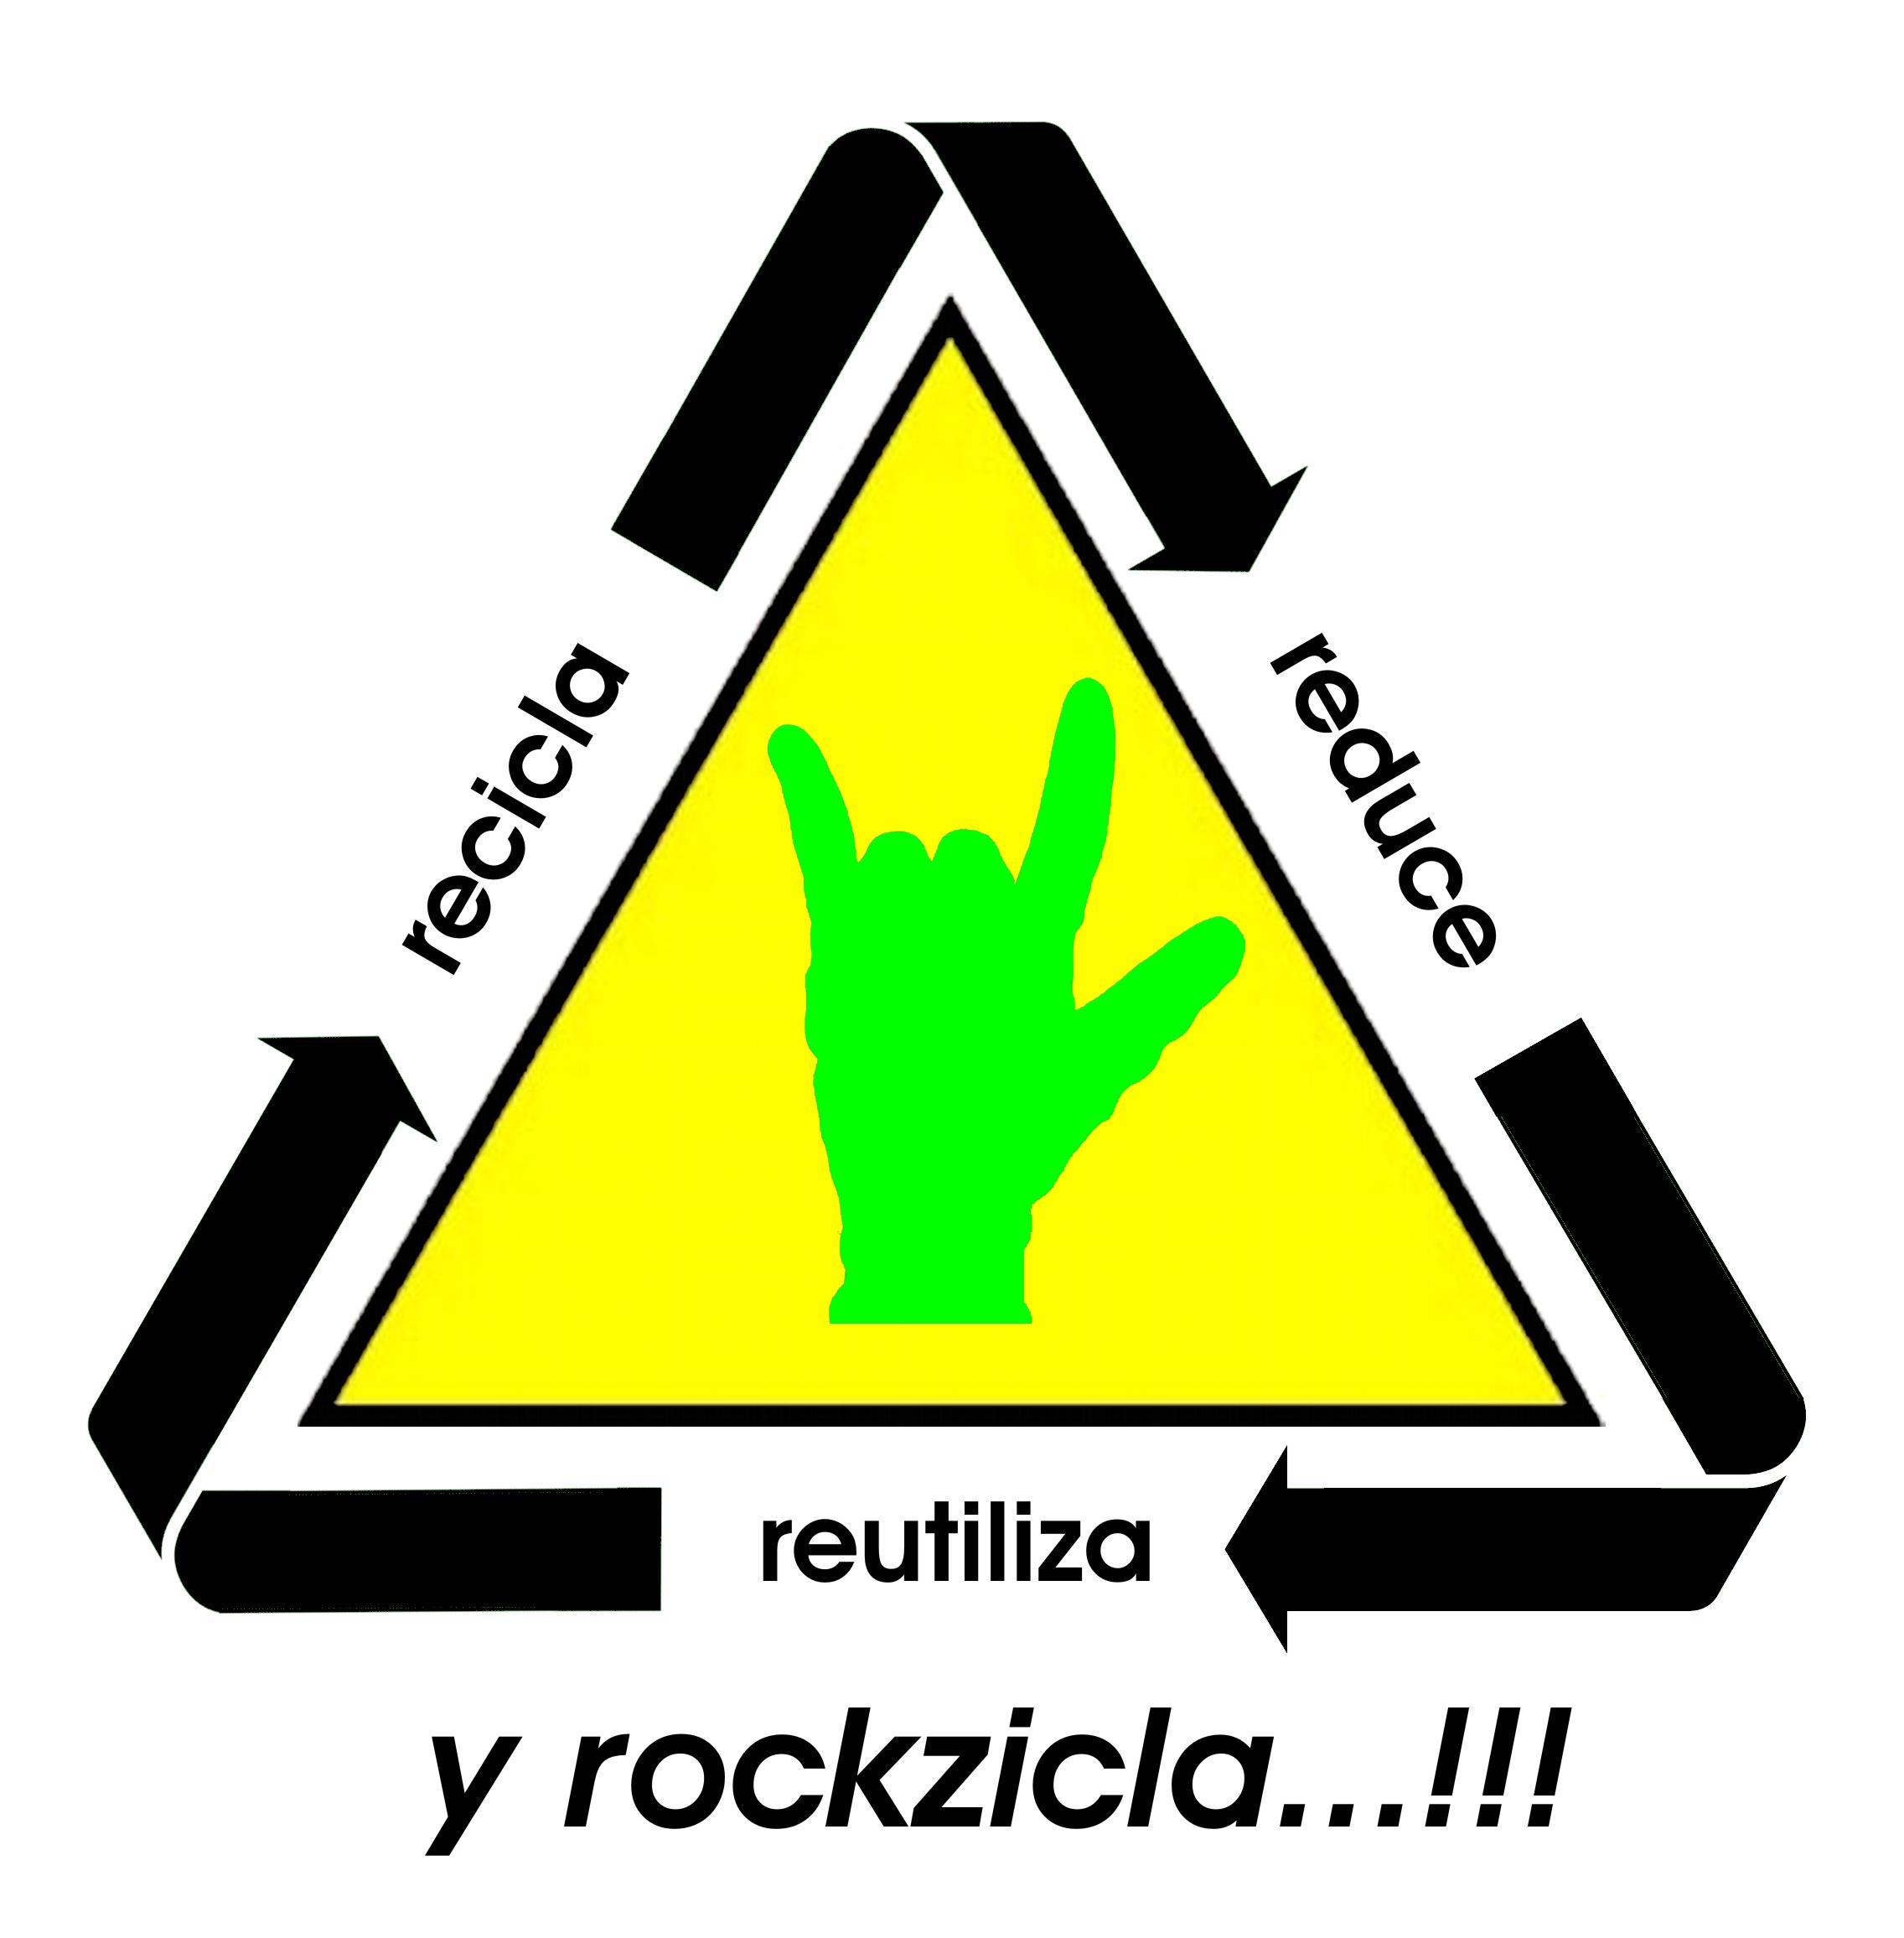 recicla, reduce, reutiliza y rockzicla...!!